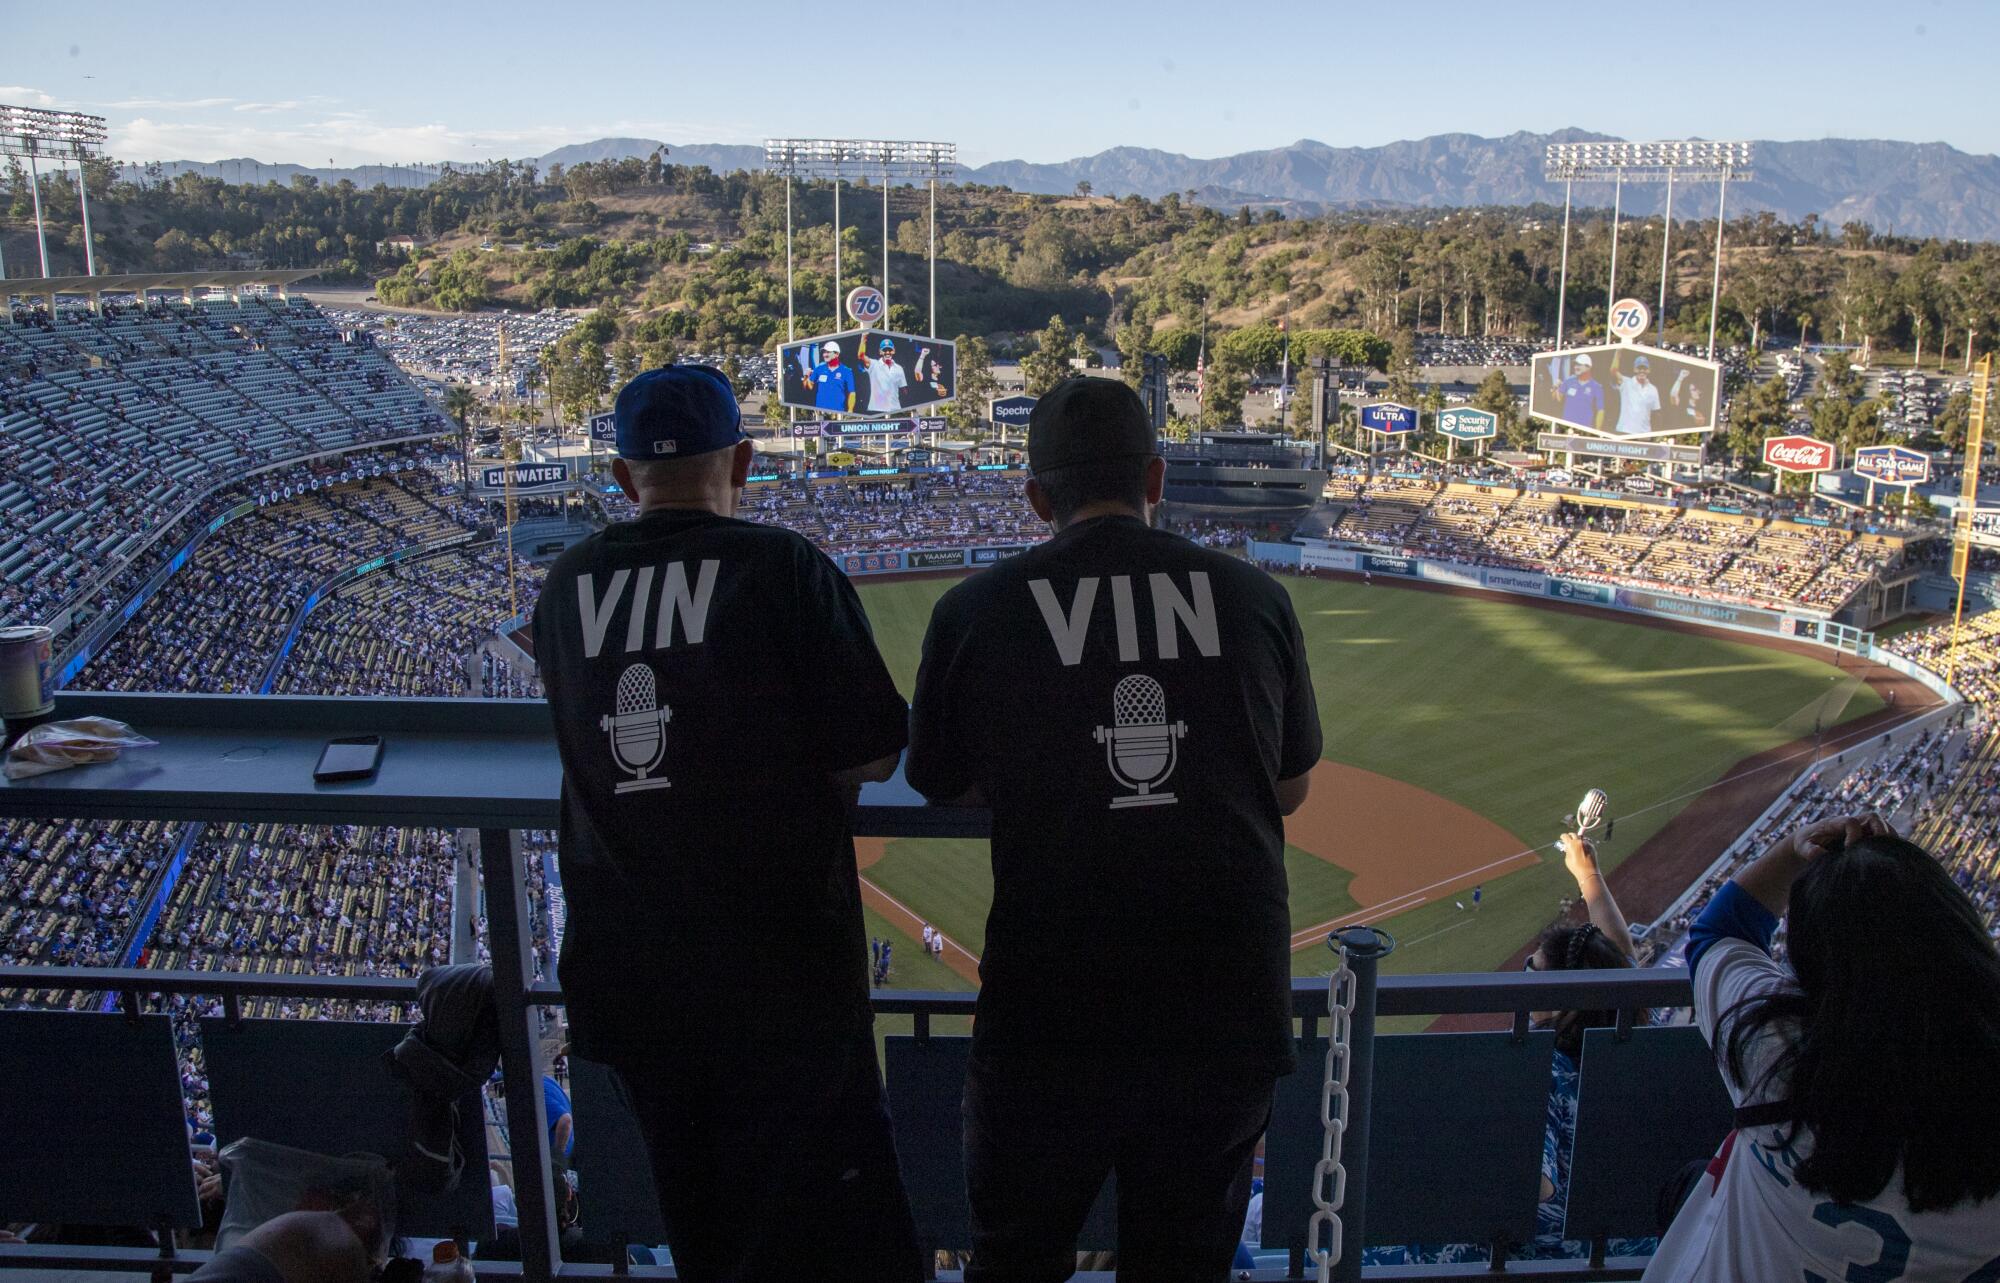 Dodger fans wear VIN T-shirts in honor at Dodger Stadium.